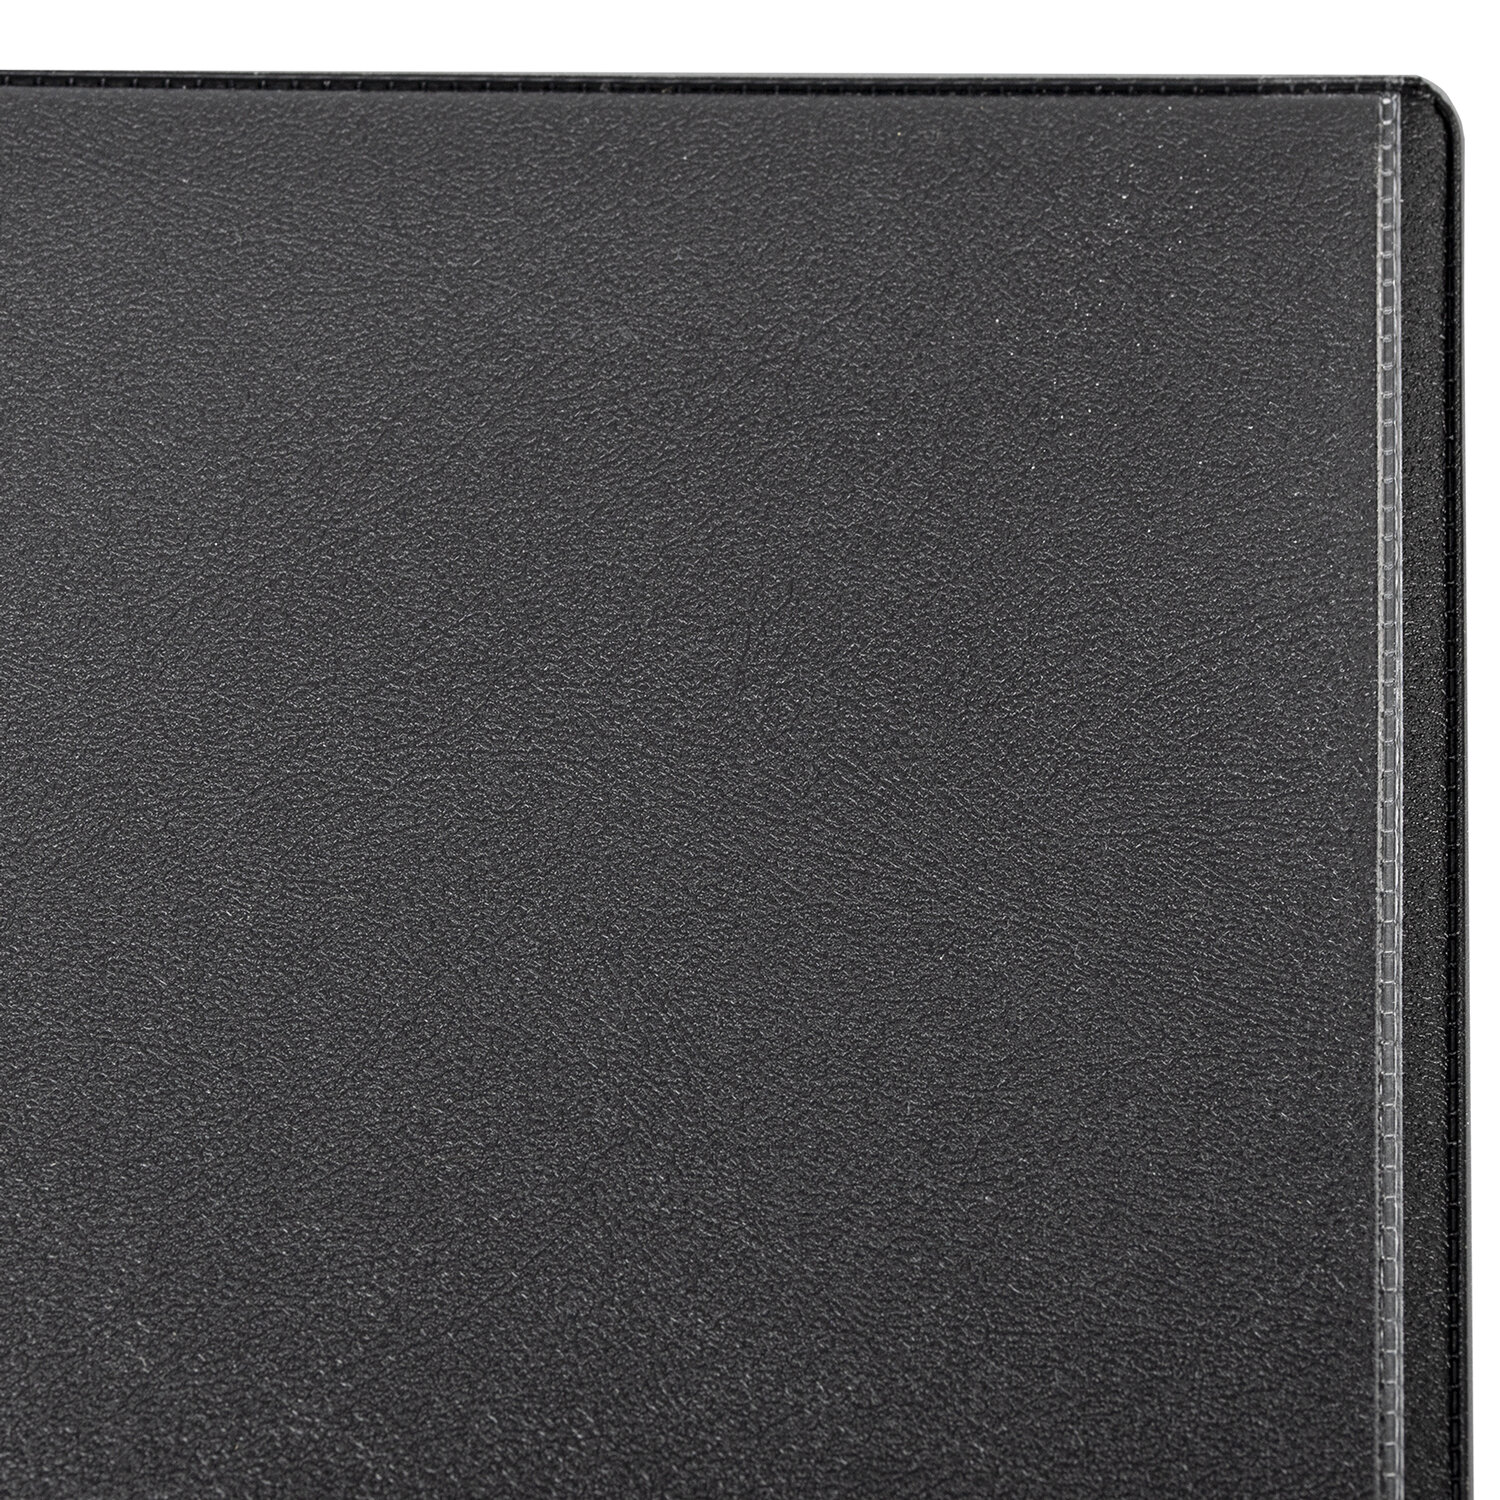 Коврик-подкладка настольный для письма BRAUBERG, 450х650 мм, с прозрачным карманом, черный, 236775